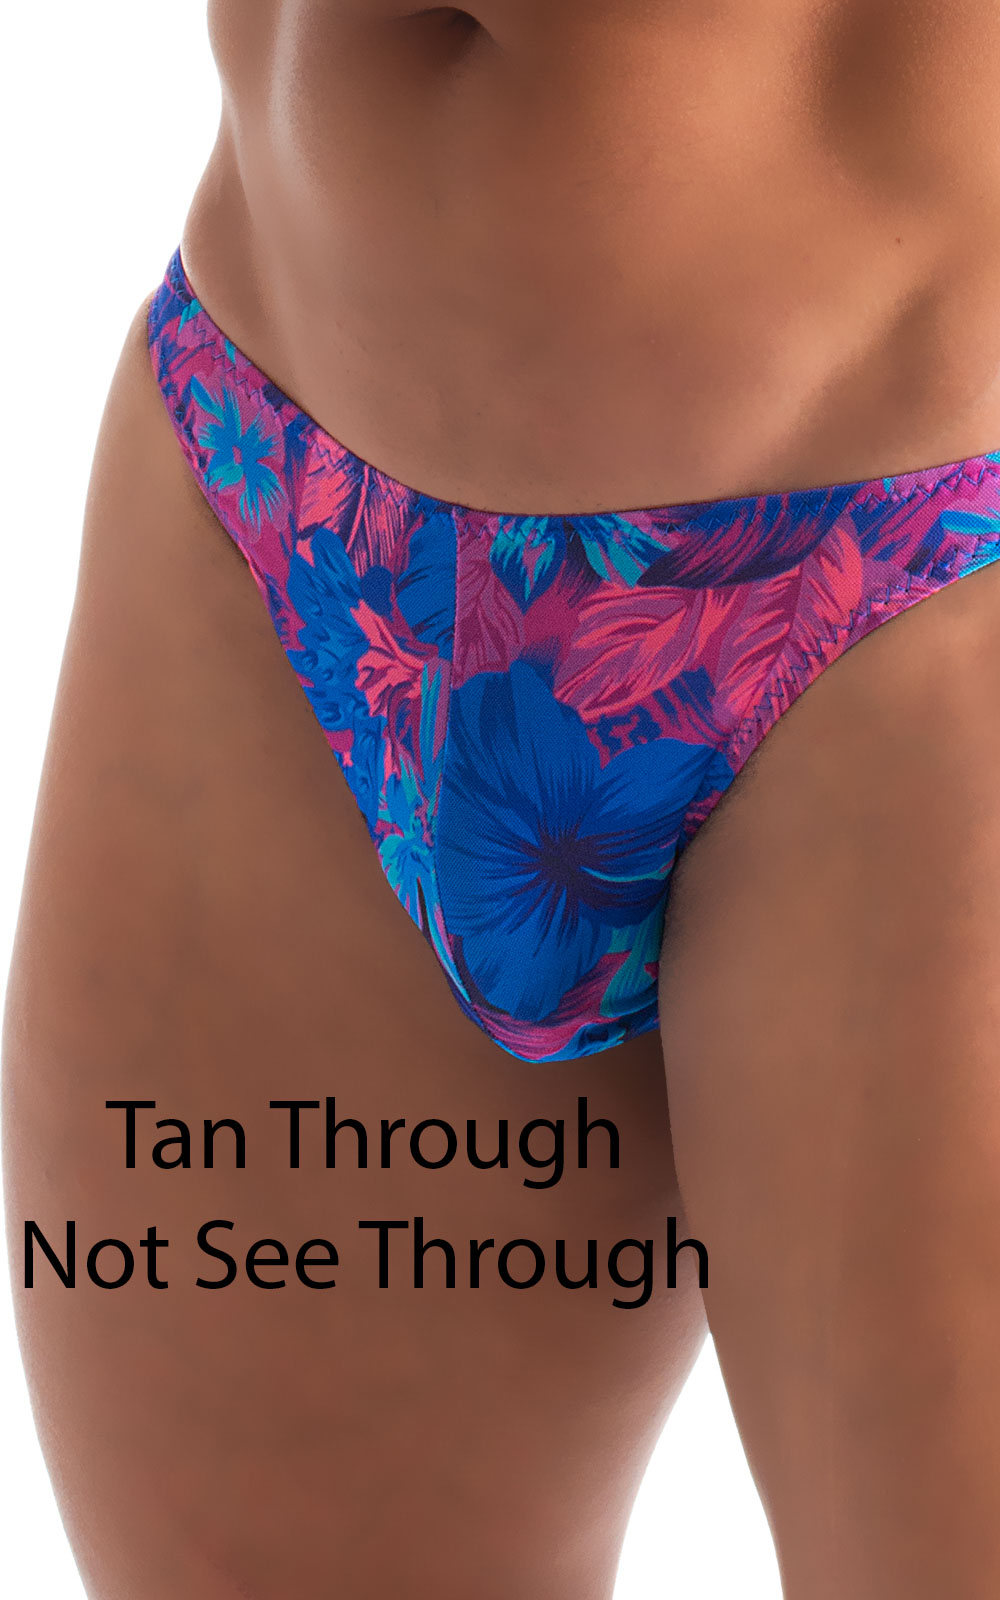 Bikini Brief Swimsuit in Tan Through RaveUp 3